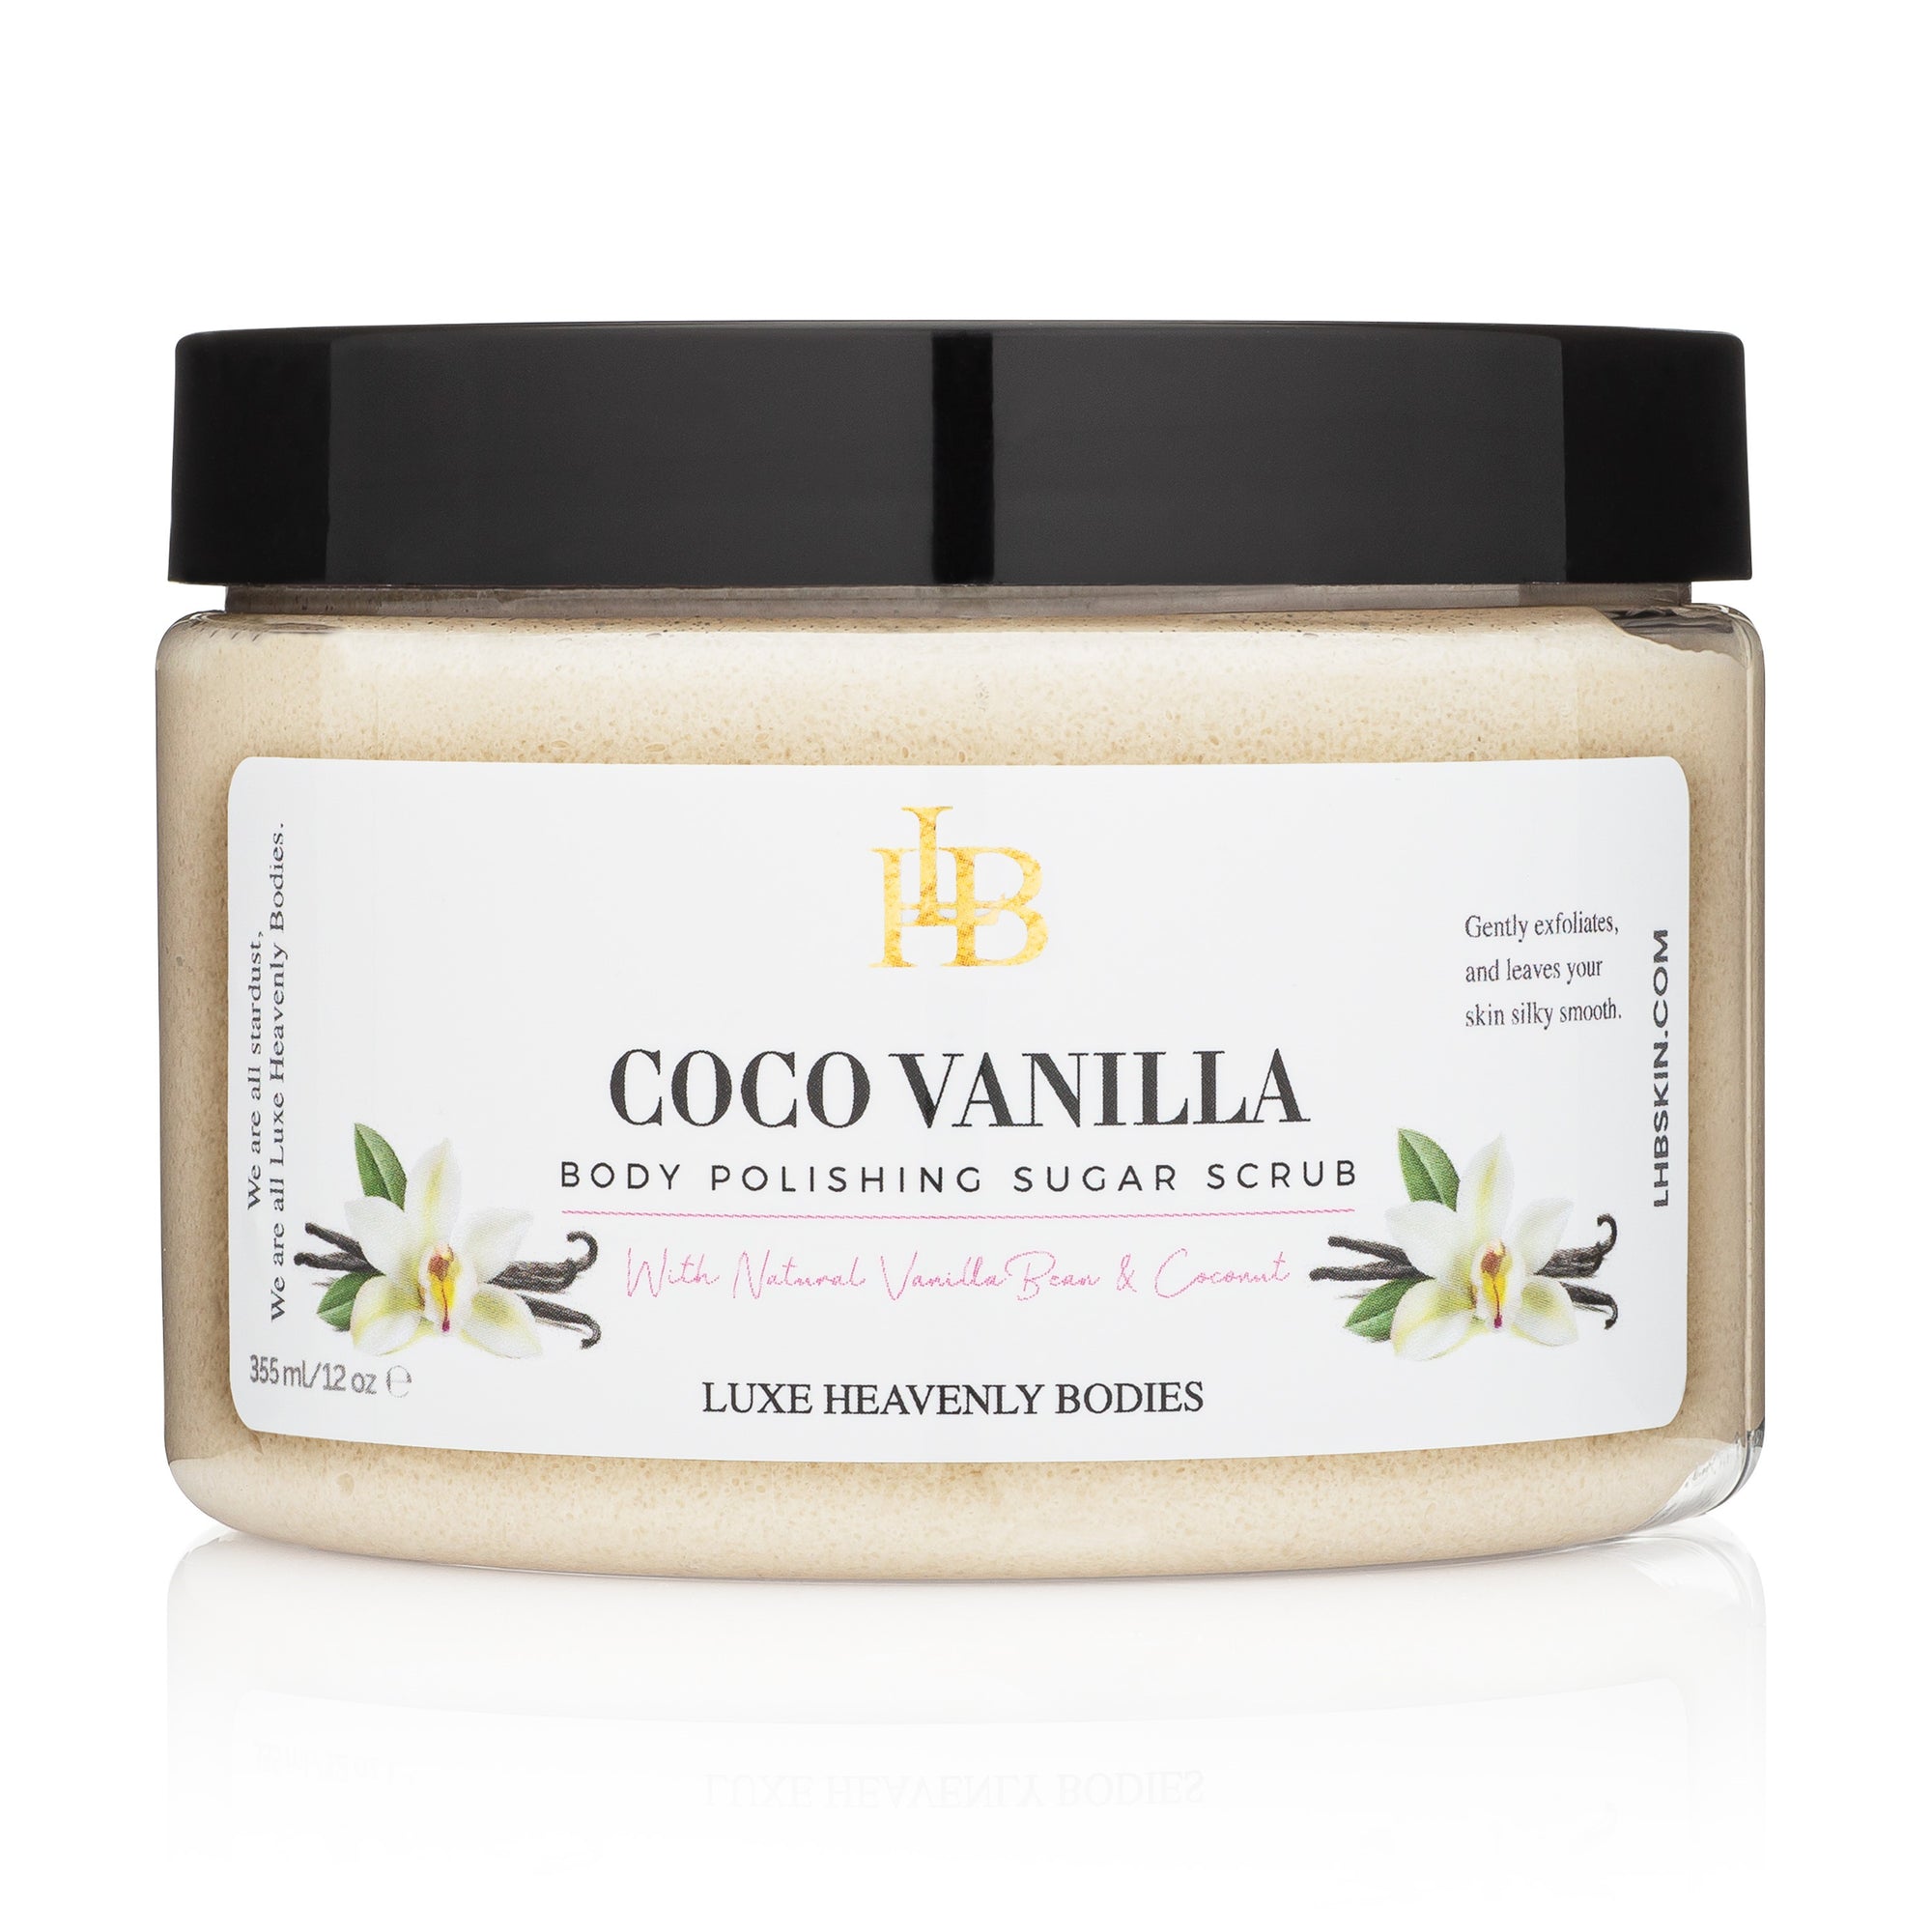 CoCo Vanilla Body Polishing Sugar Scrub